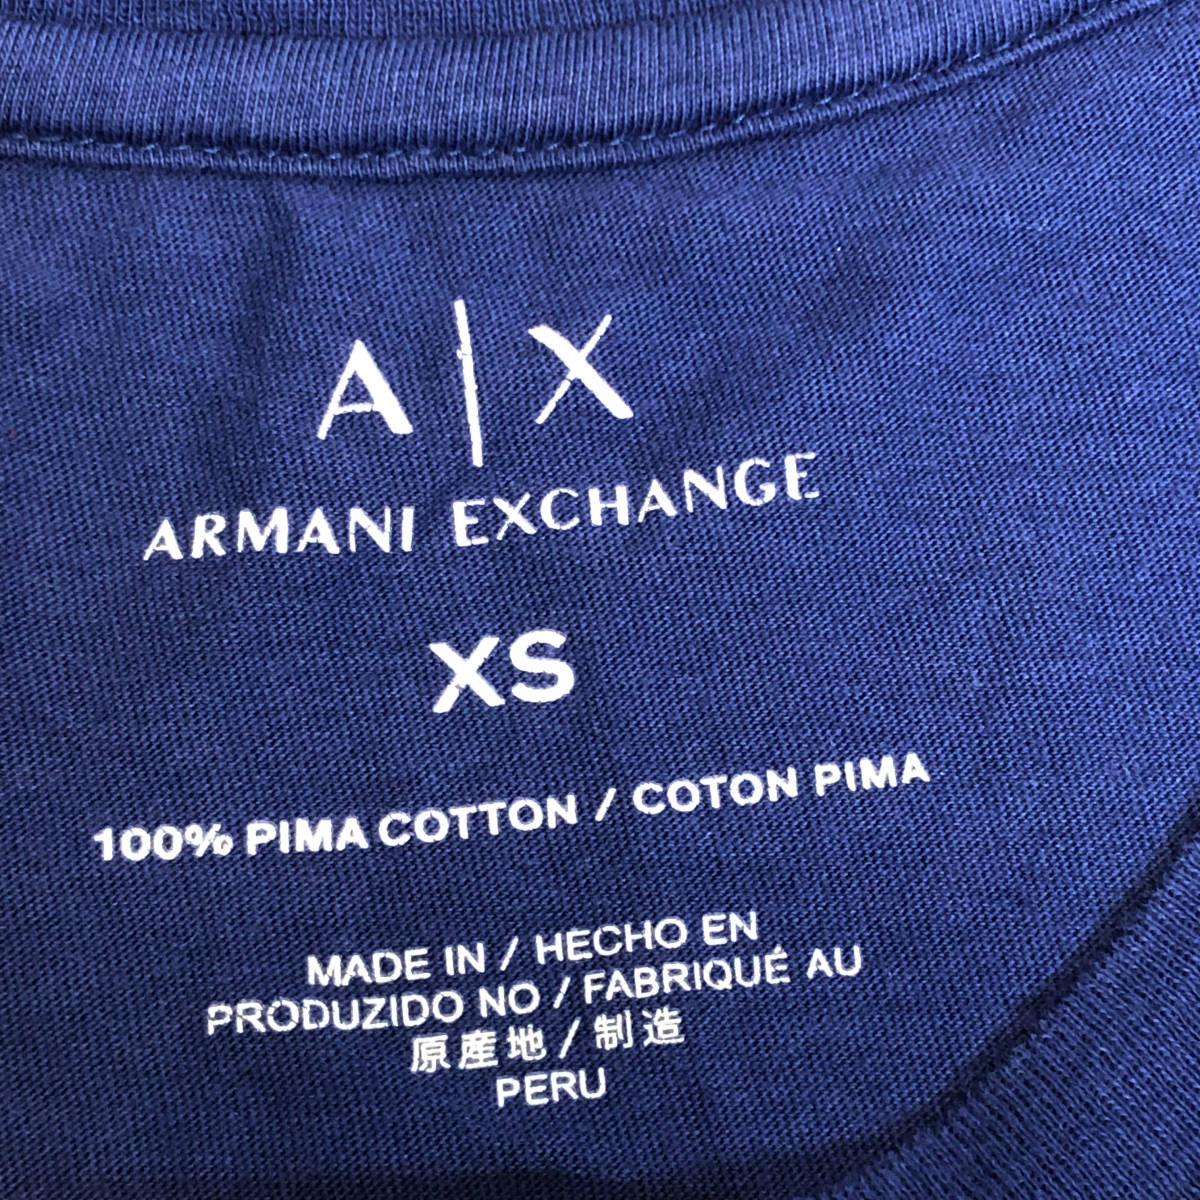 ARMANI EXCHANGE アルマーニエクスチェンジ Tシャツ ロゴ XS ネイビー 半袖 AX メンズ A7_画像6